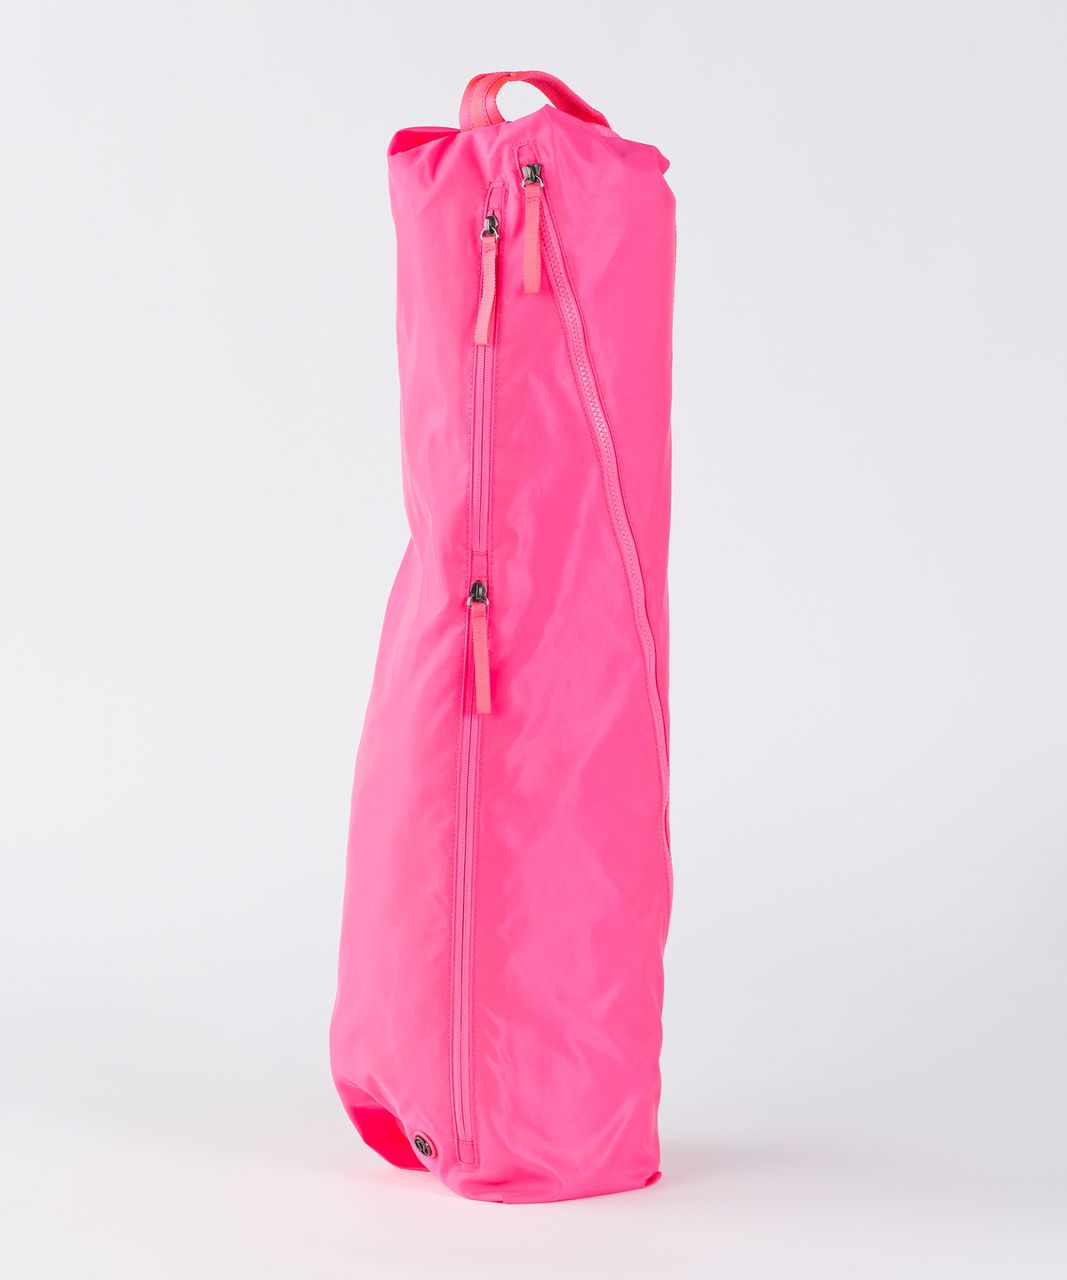 Lululemon The Yoga Bag - Neon Pink - lulu fanatics